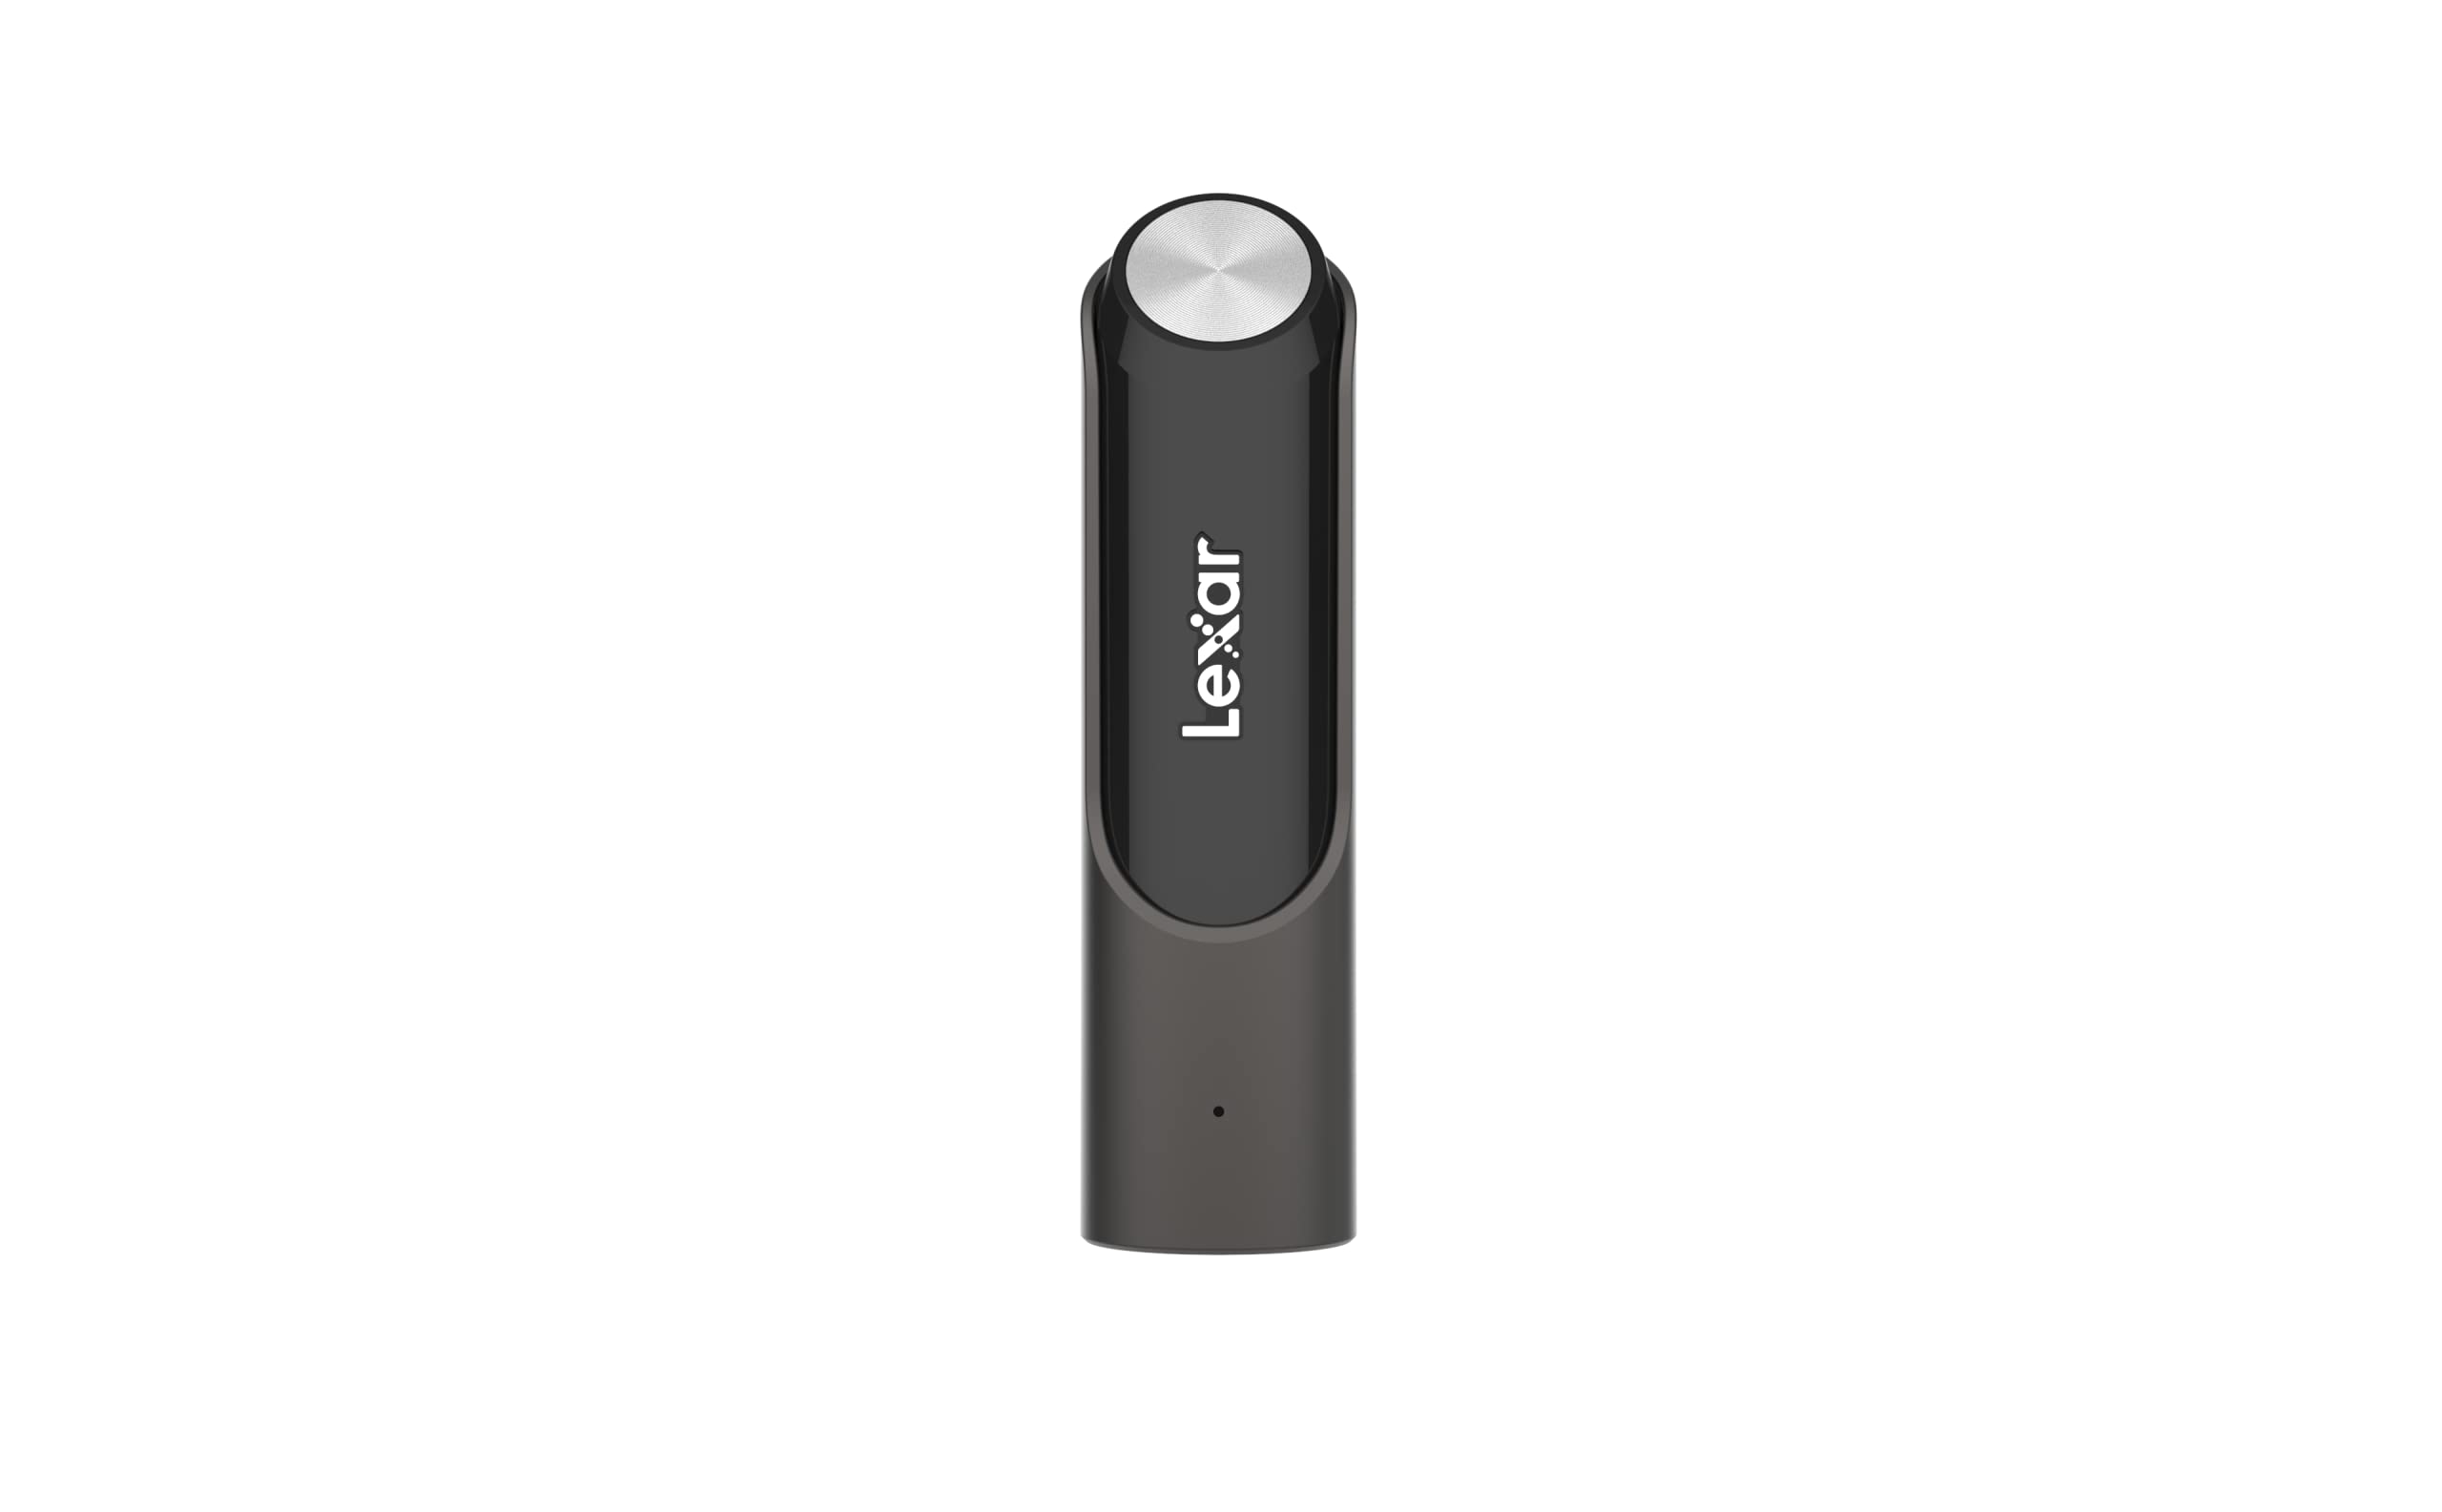 Lexar 256GB JumpDrive P30 USB 3.2 Gen 1 Flash Drive, Up to 450MB/s Read and Write (LJDP030256G-RNQNG)